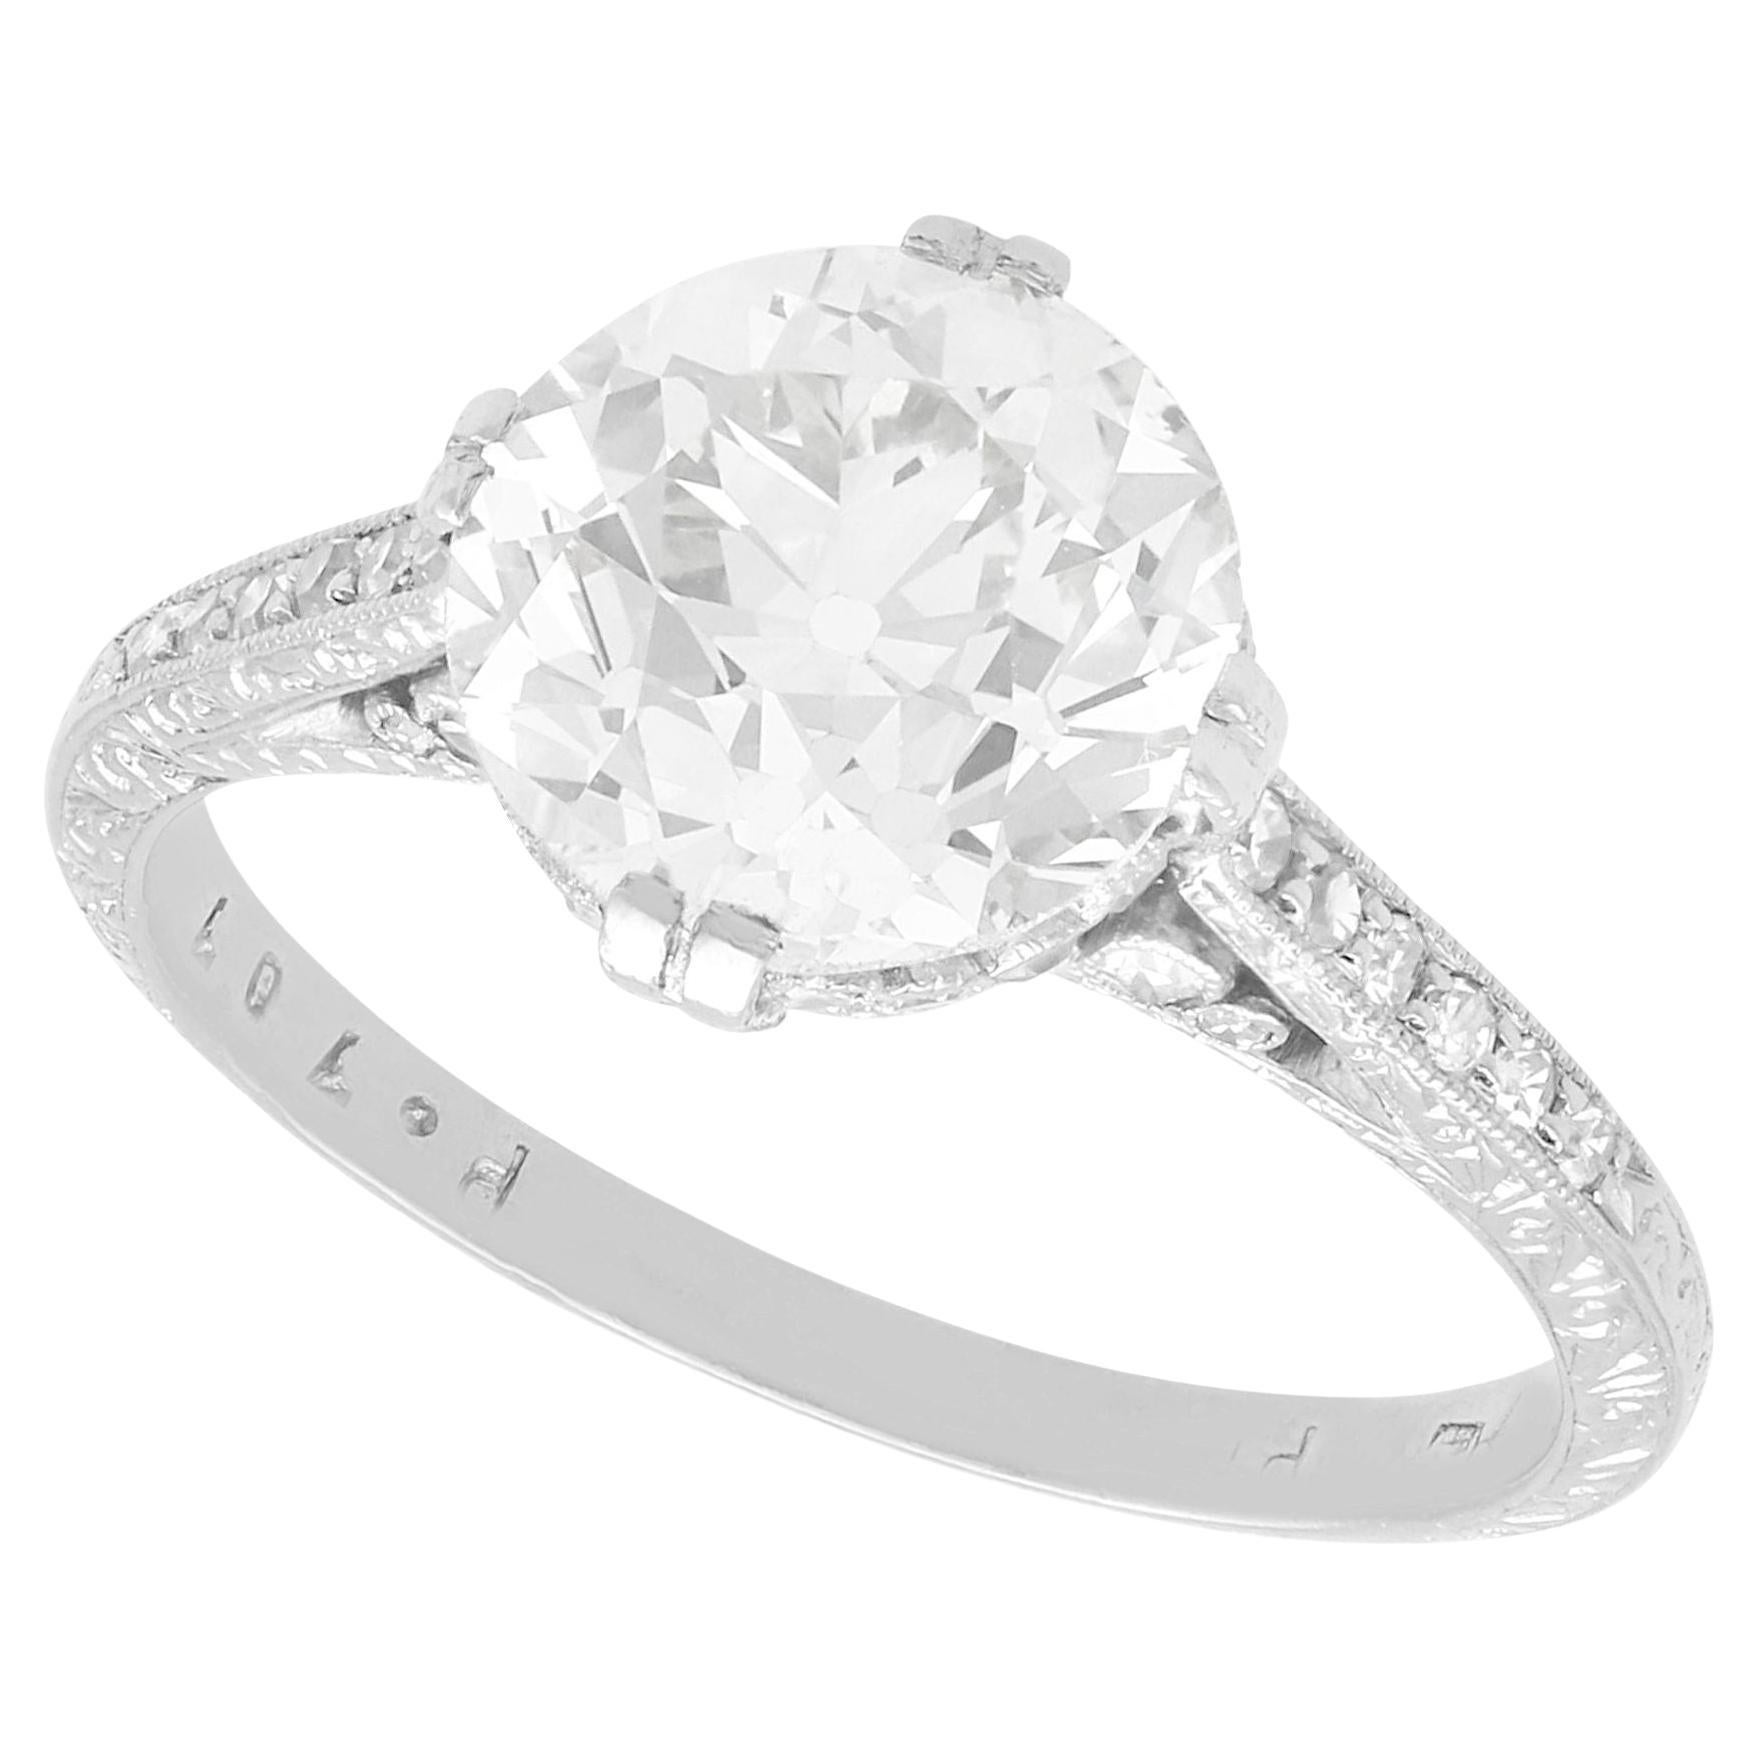 Antique 3.31 Carat Diamond and Platinum Solitaire Engagement Ring, circa 1920